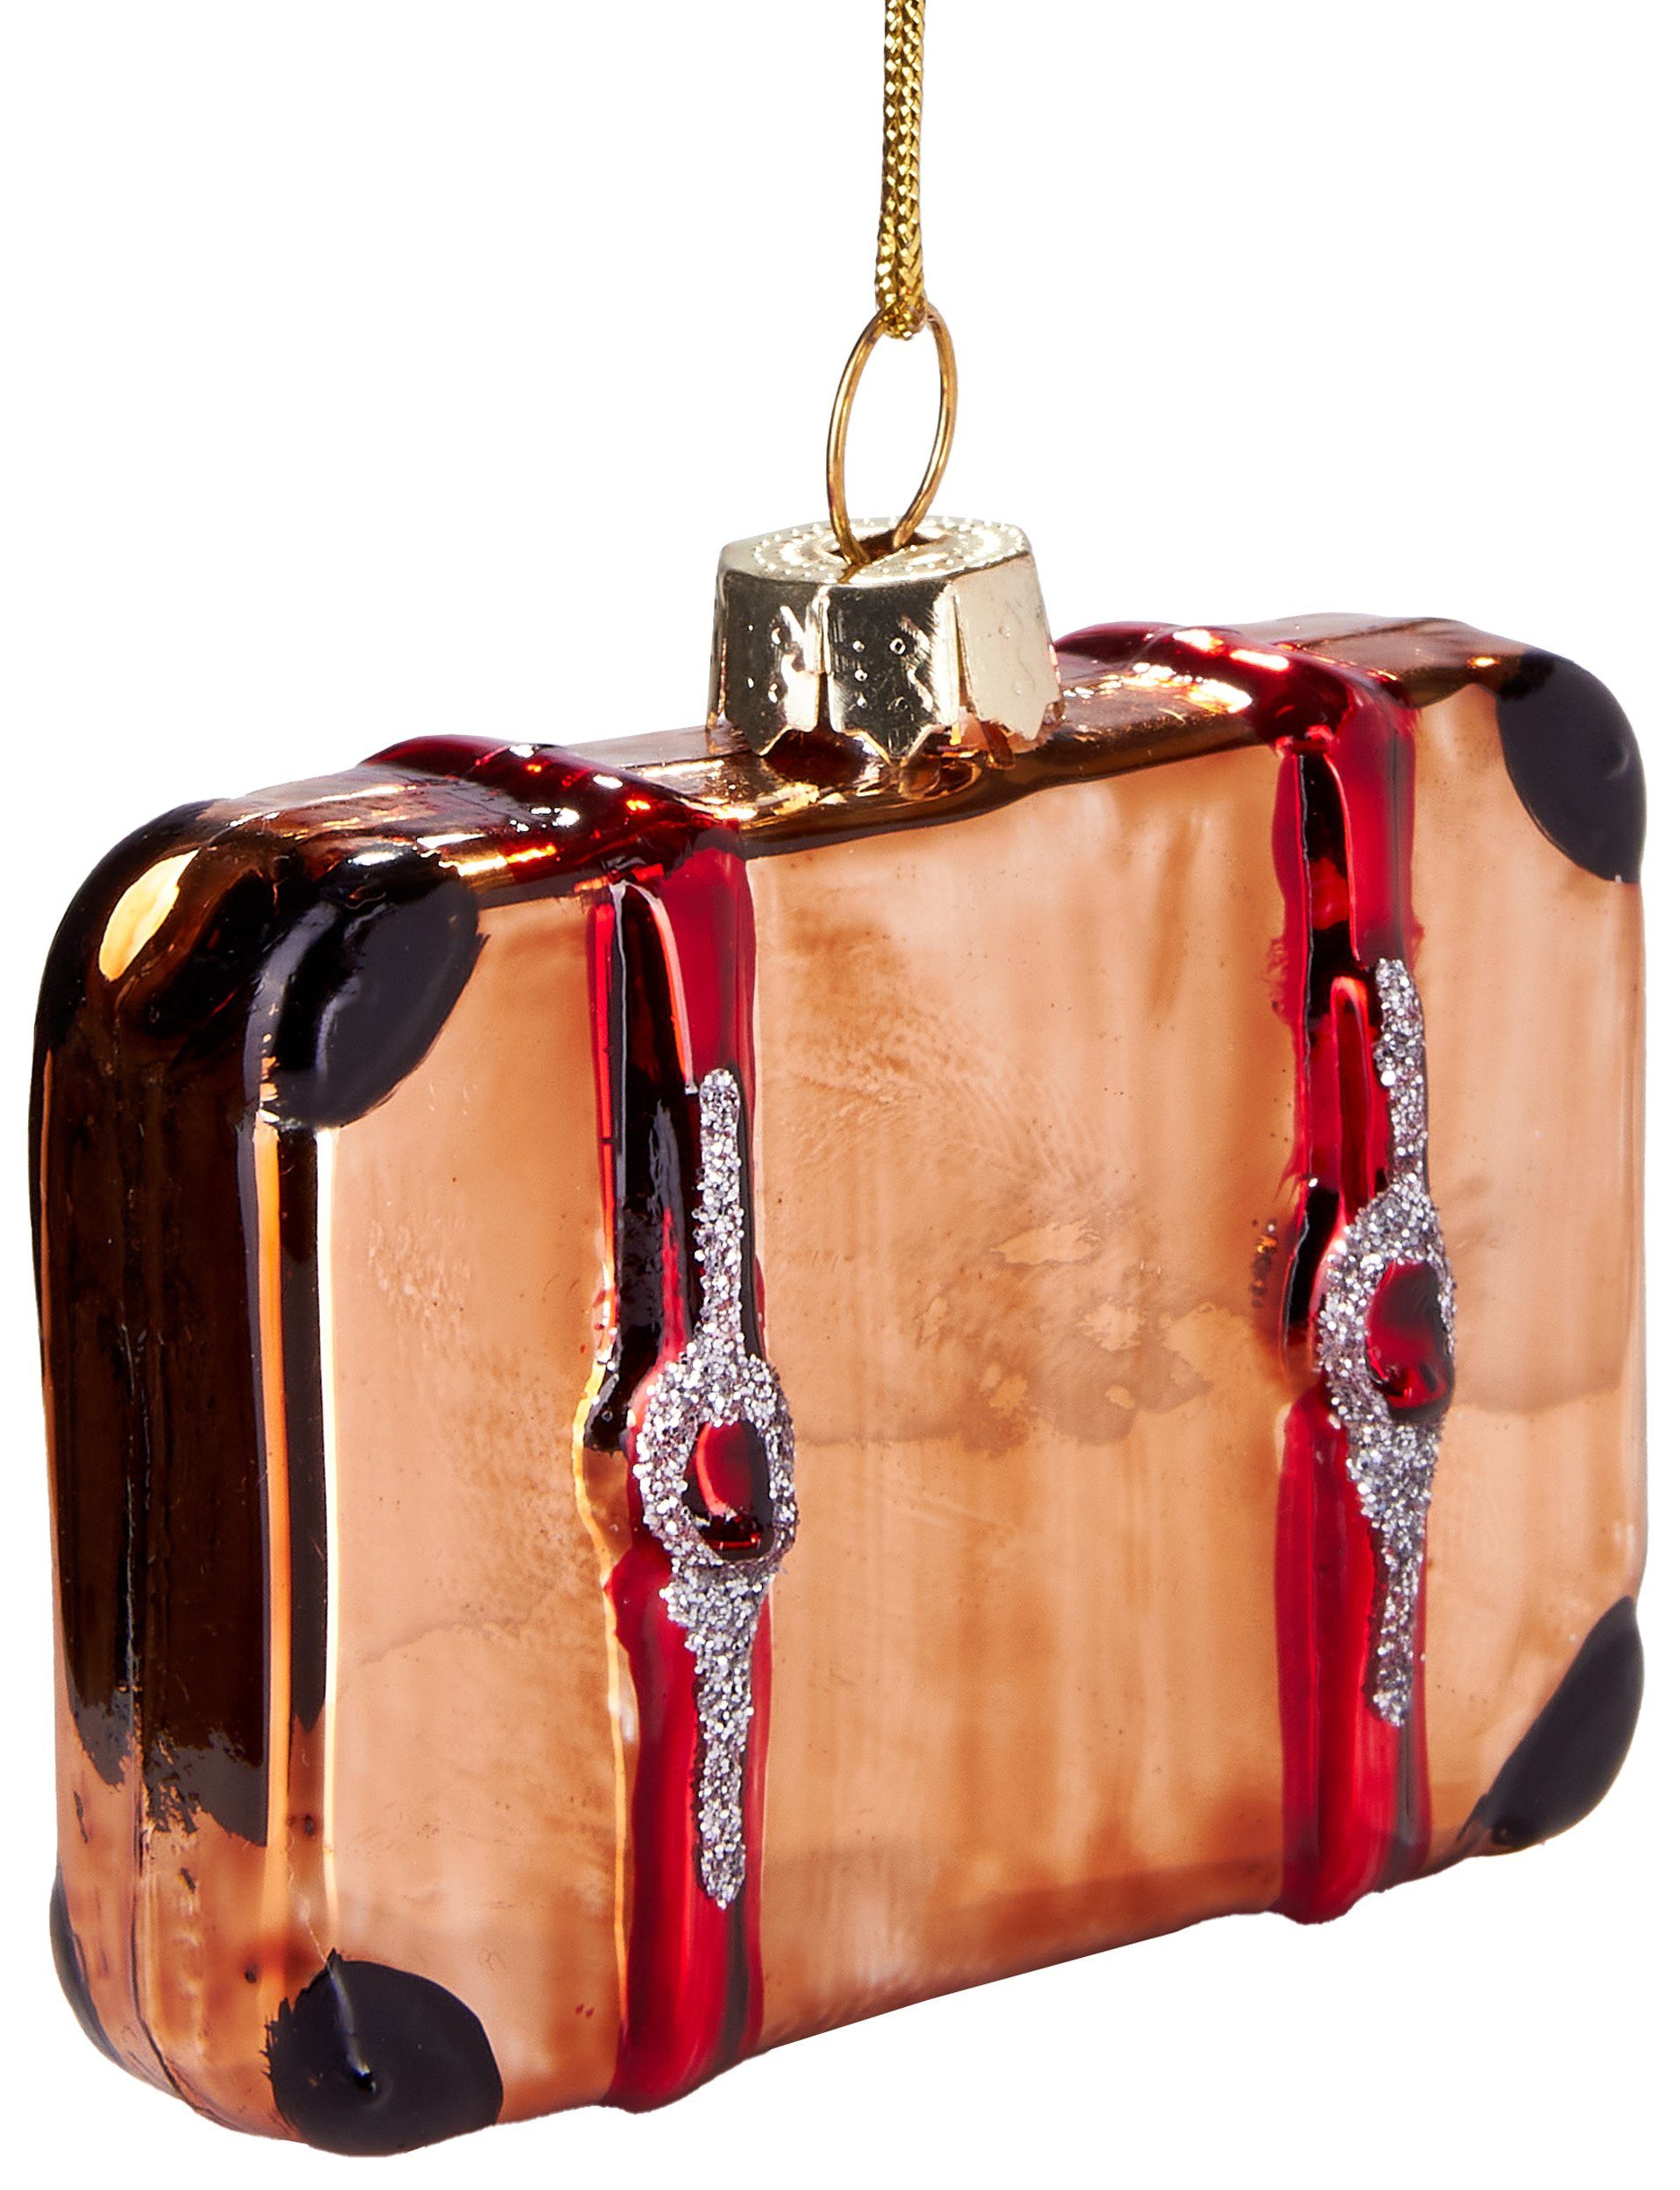 BRUBAKER Christbaumschmuck Handbemalte Weihnachtskugel Brauner Reisekoffer, Weihnachtsdekoration für Reisehungrige aus Glas, mundgeblasenes Unikat - 7 cm